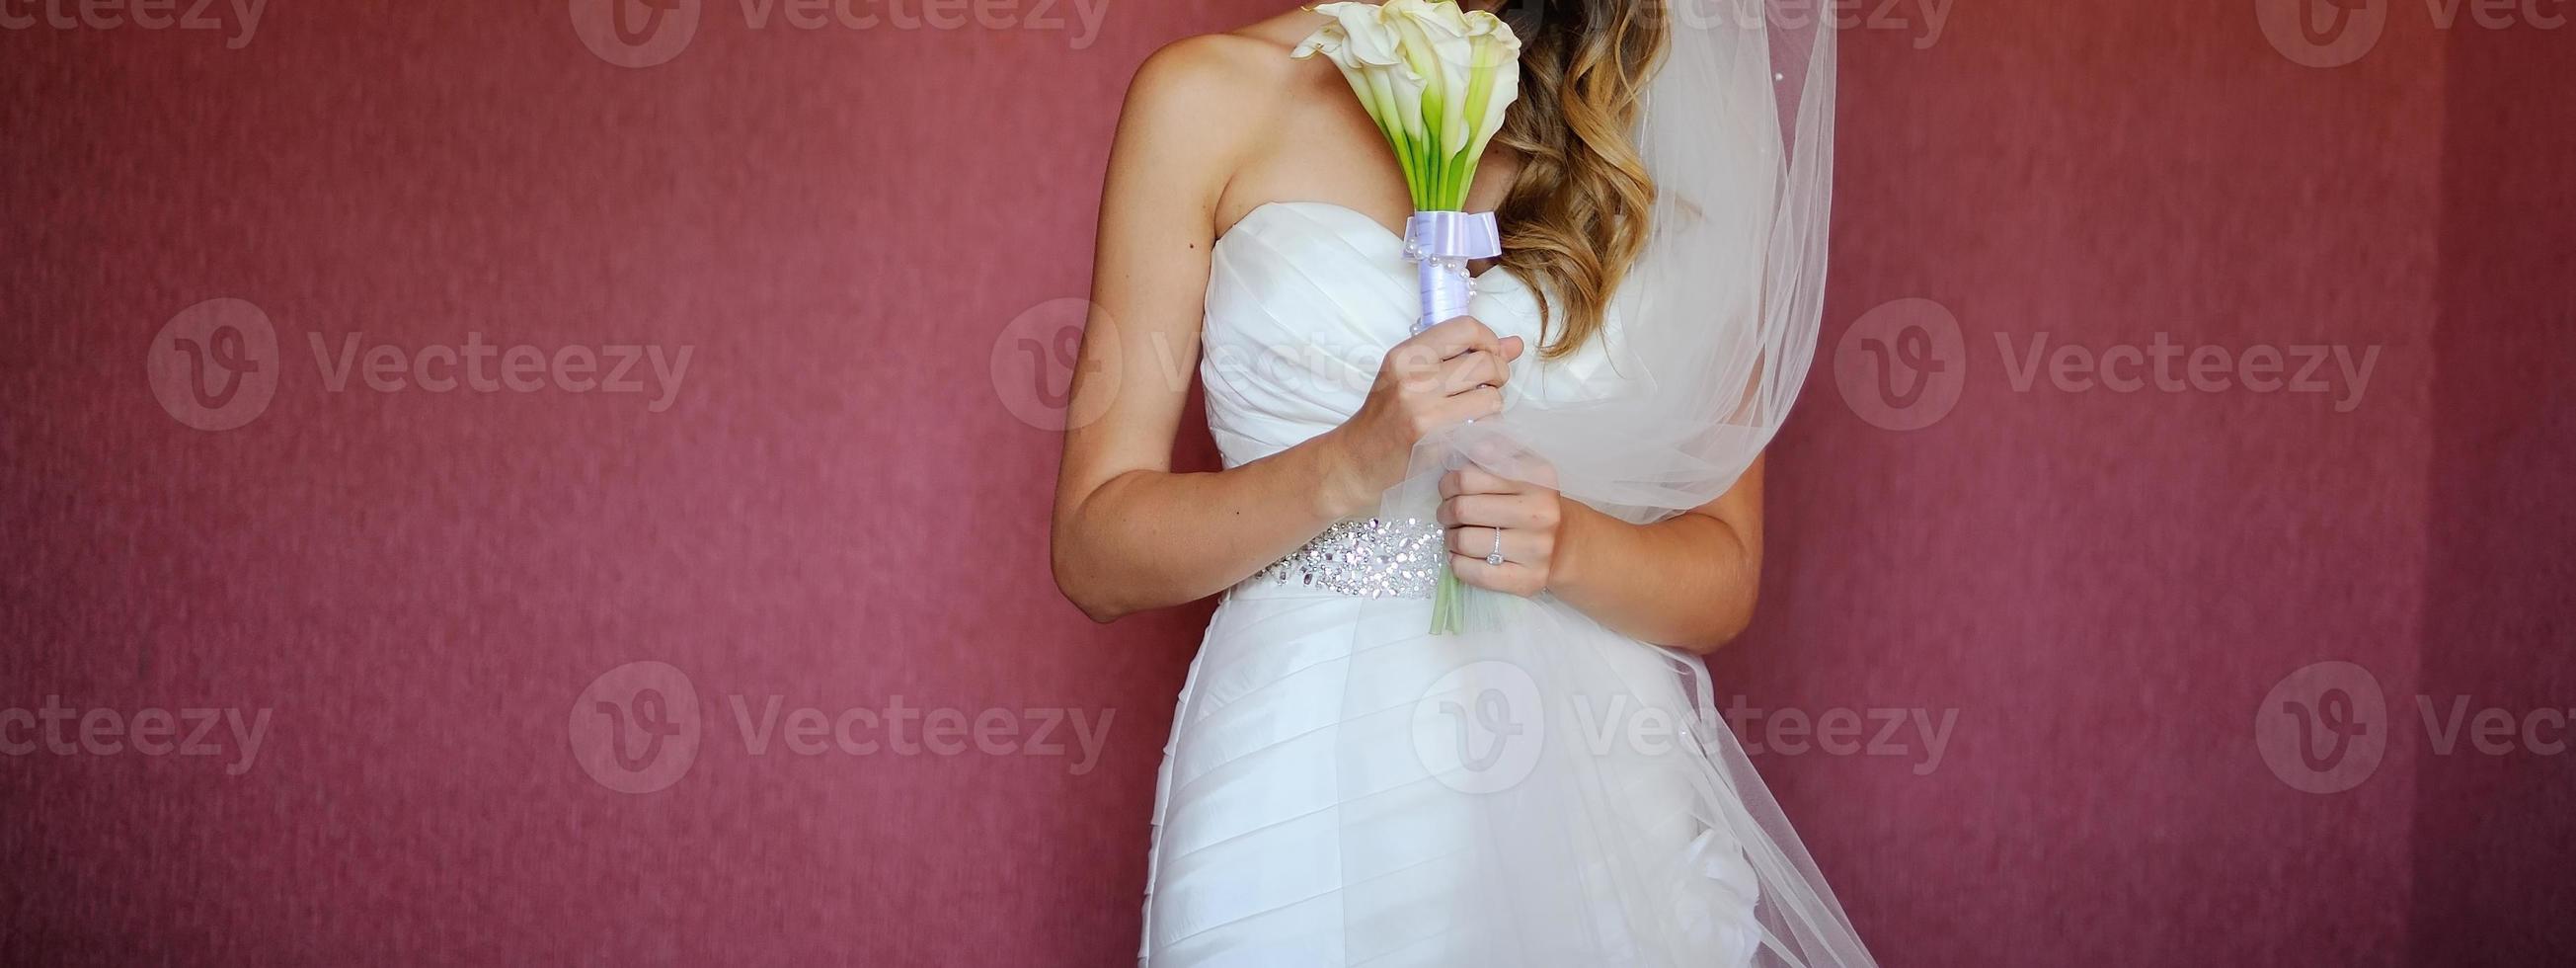 jovem noiva elegante usando lindo vestido de noiva. foto